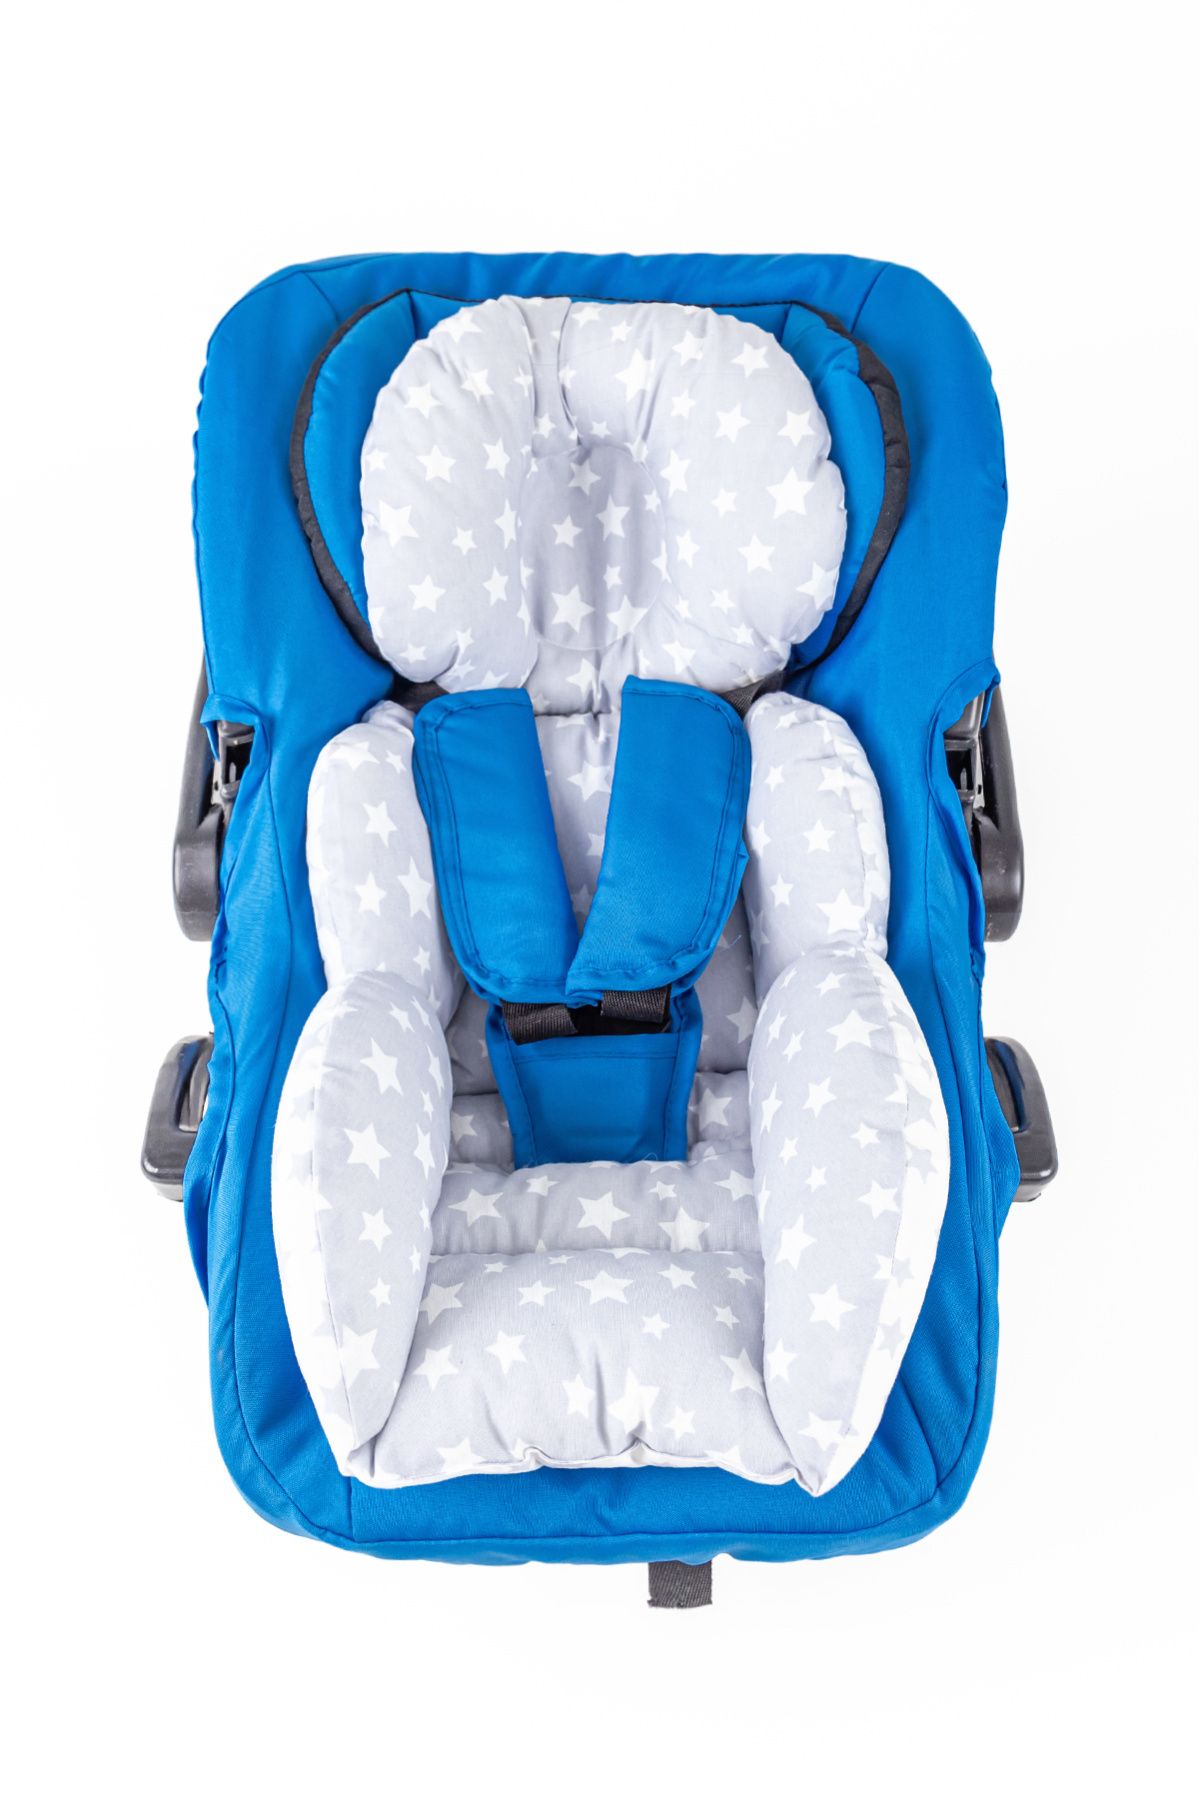 Babymod Yıldız Desenli Bel Destekli Bebek Arabası Puset Minderi